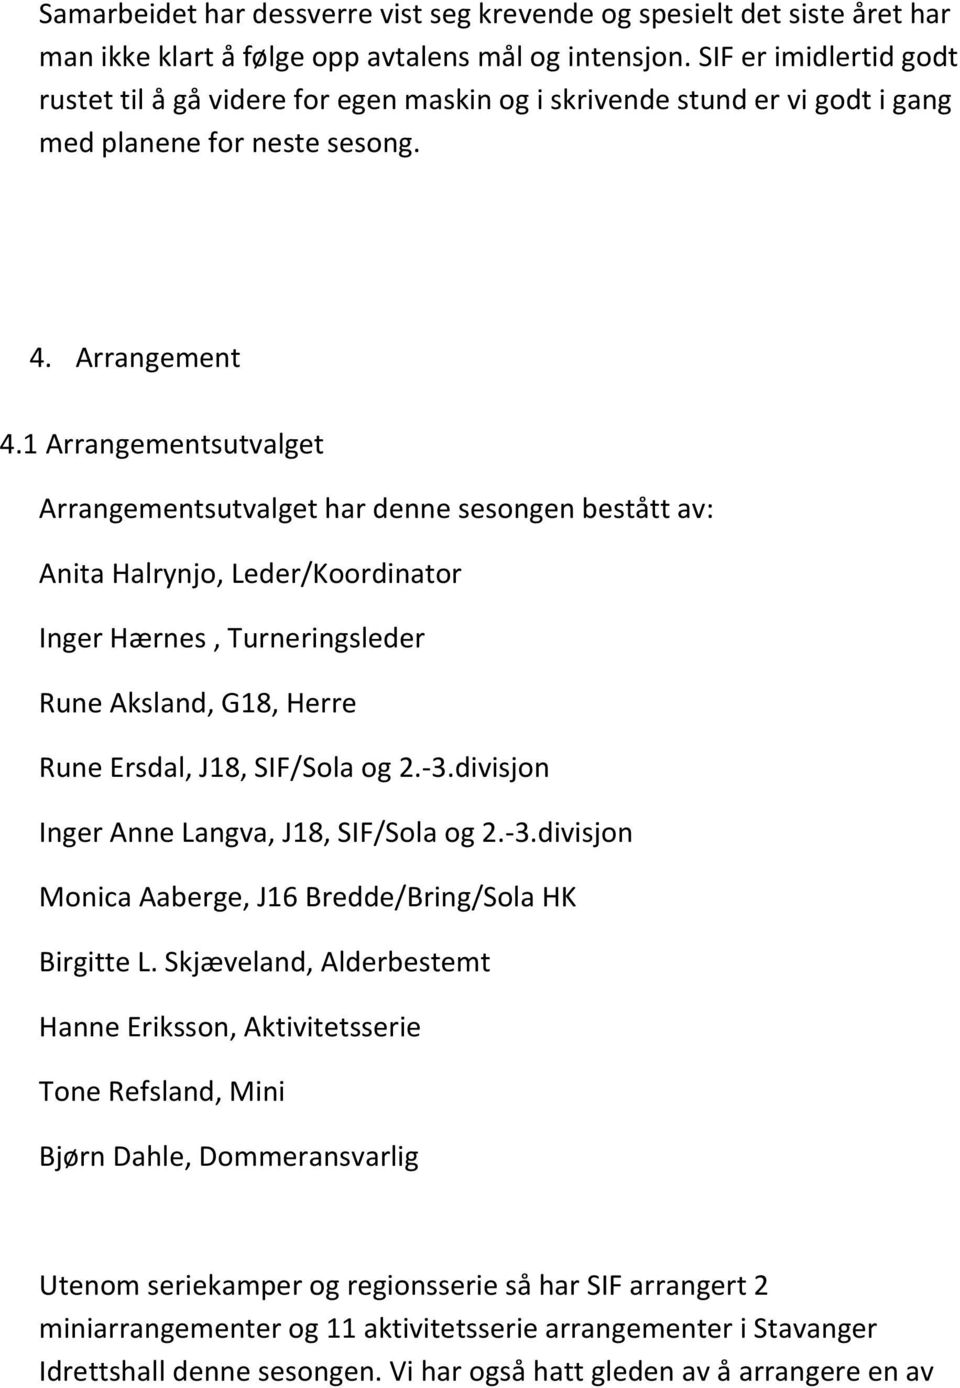 1 Arrangementsutvalget Arrangementsutvalget har denne sesongen bestått av: Anita Halrynjo, Leder/Koordinator Inger Hærnes, Turneringsleder Rune Aksland, G18, Herre Rune Ersdal, J18, SIF/Sola og 2.-3.